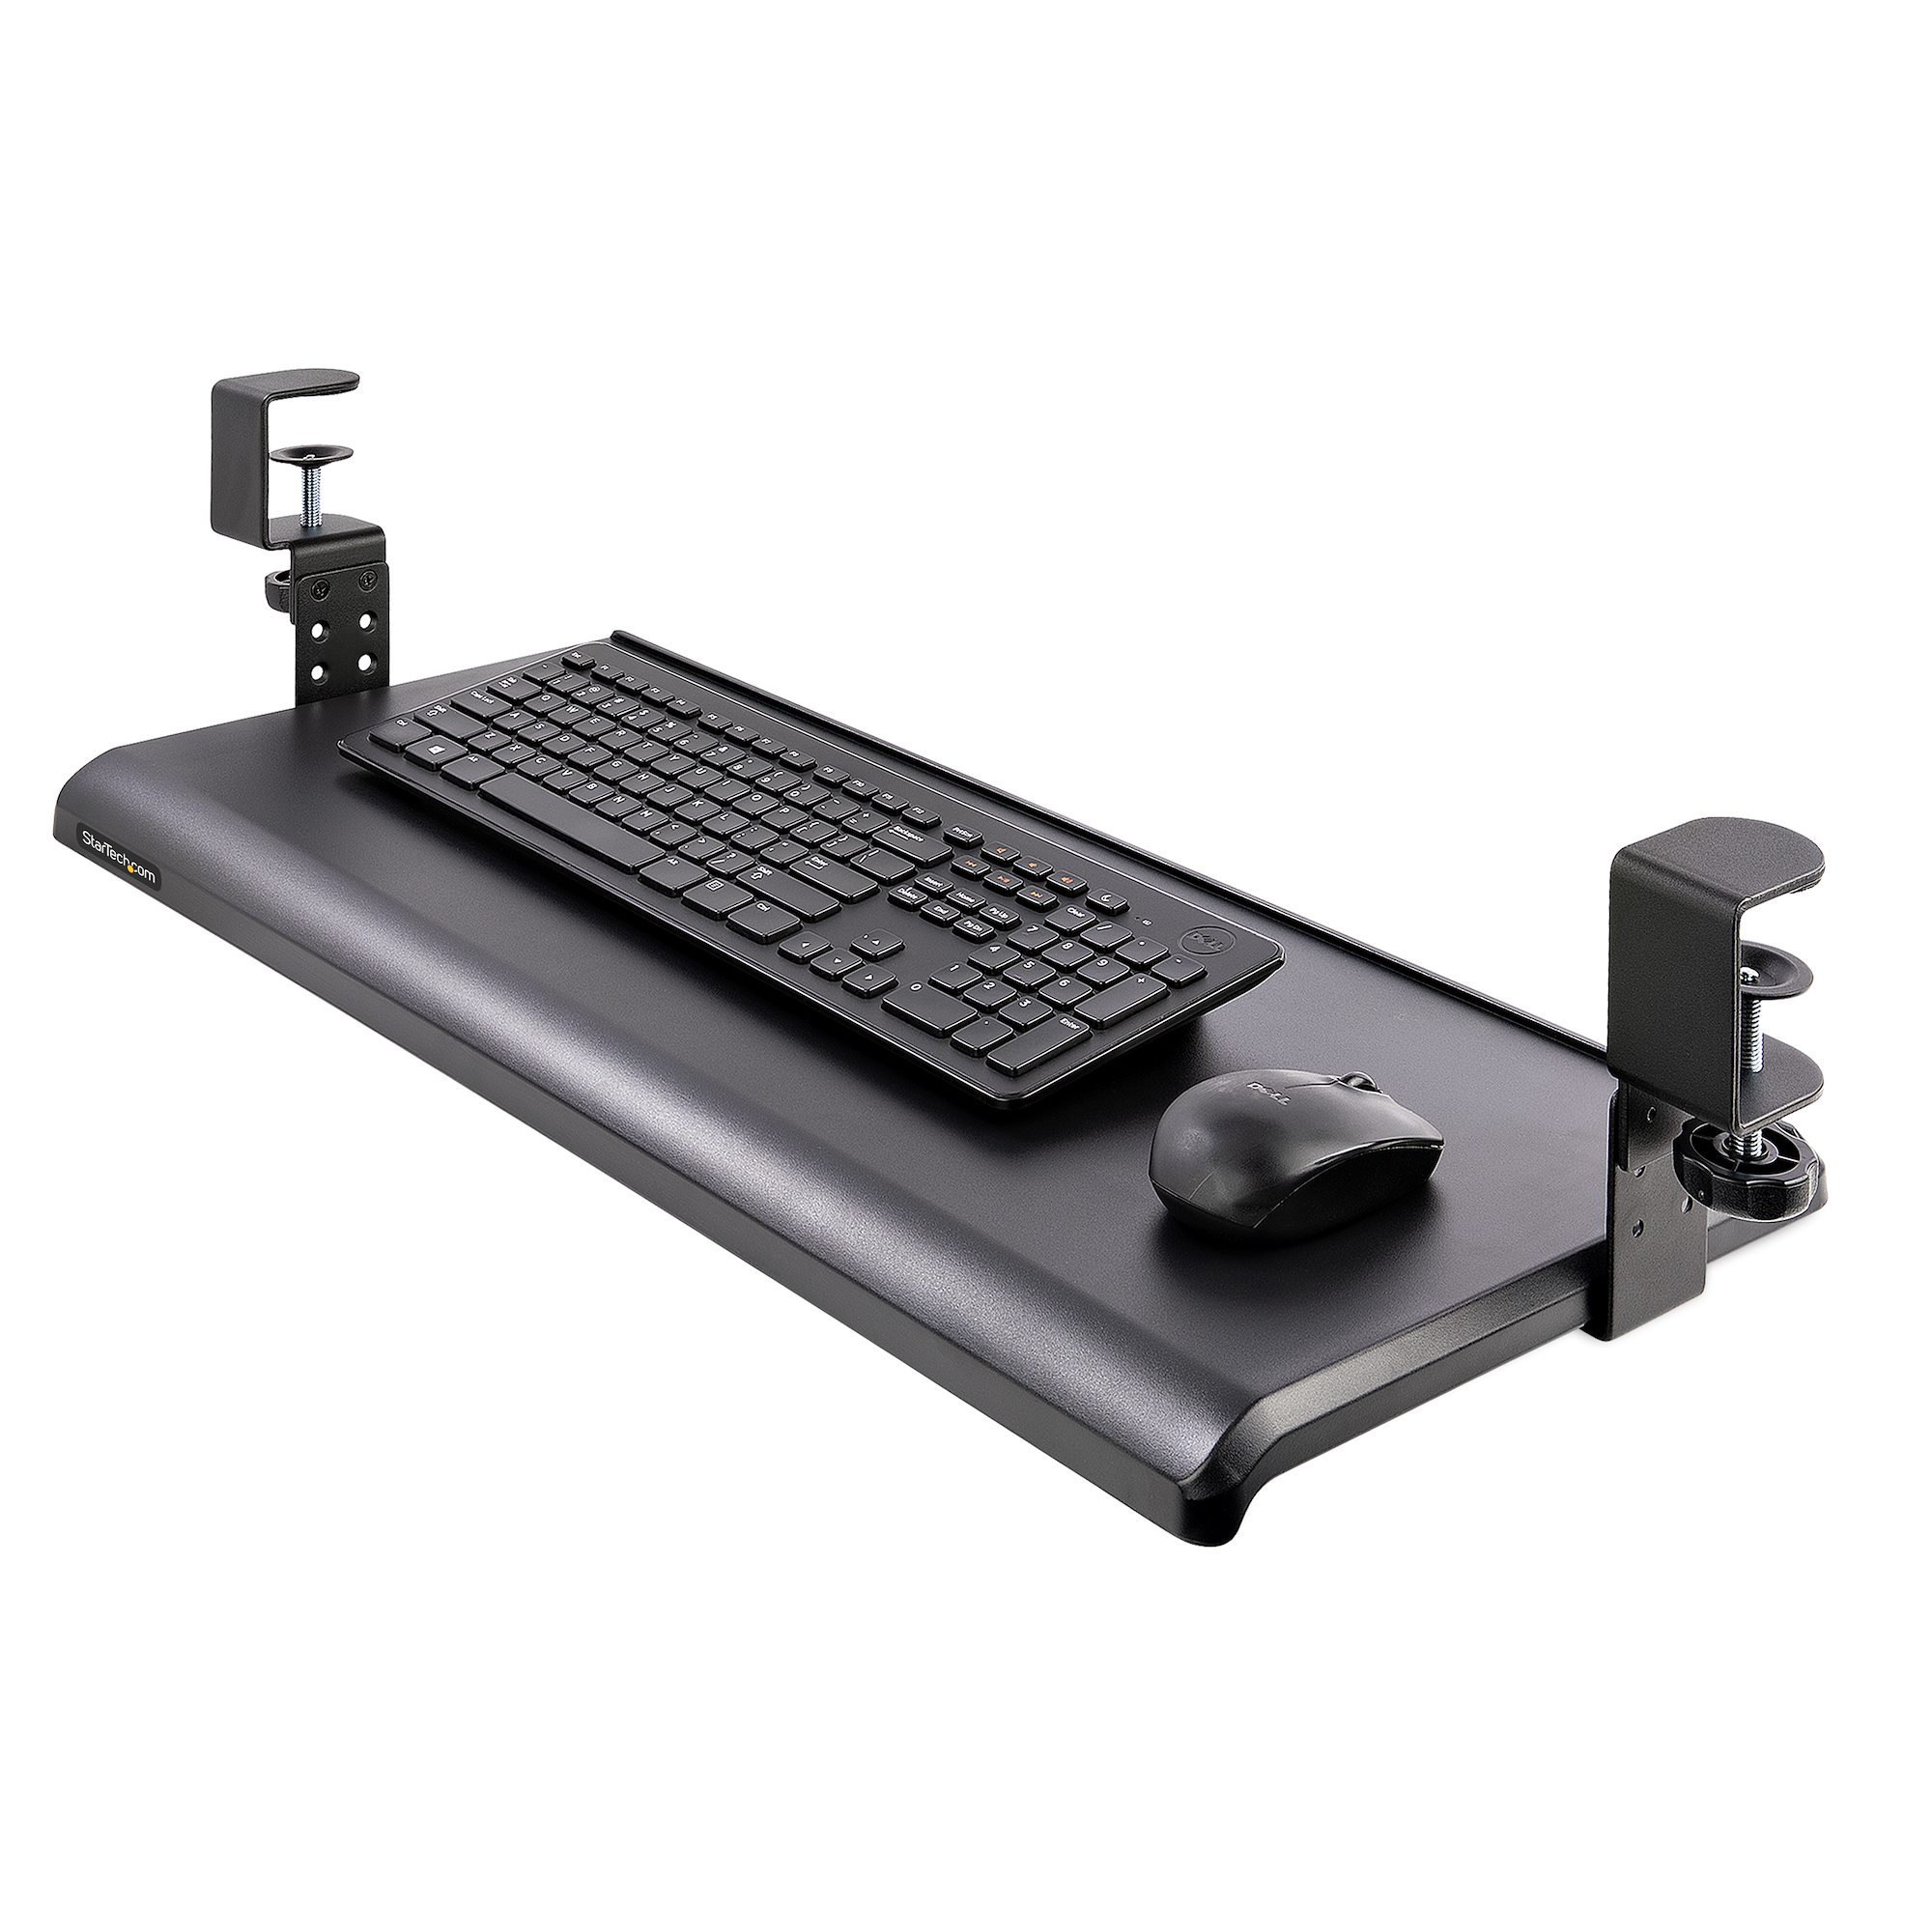  Kit de bandeja para teclado, montaje inferior, construcción de  acero, soporte deslizante para teclado y mouse, recubrimiento en polvo, 9  pulgadas de profundidad x 24 pulgadas de ancho, color negro 